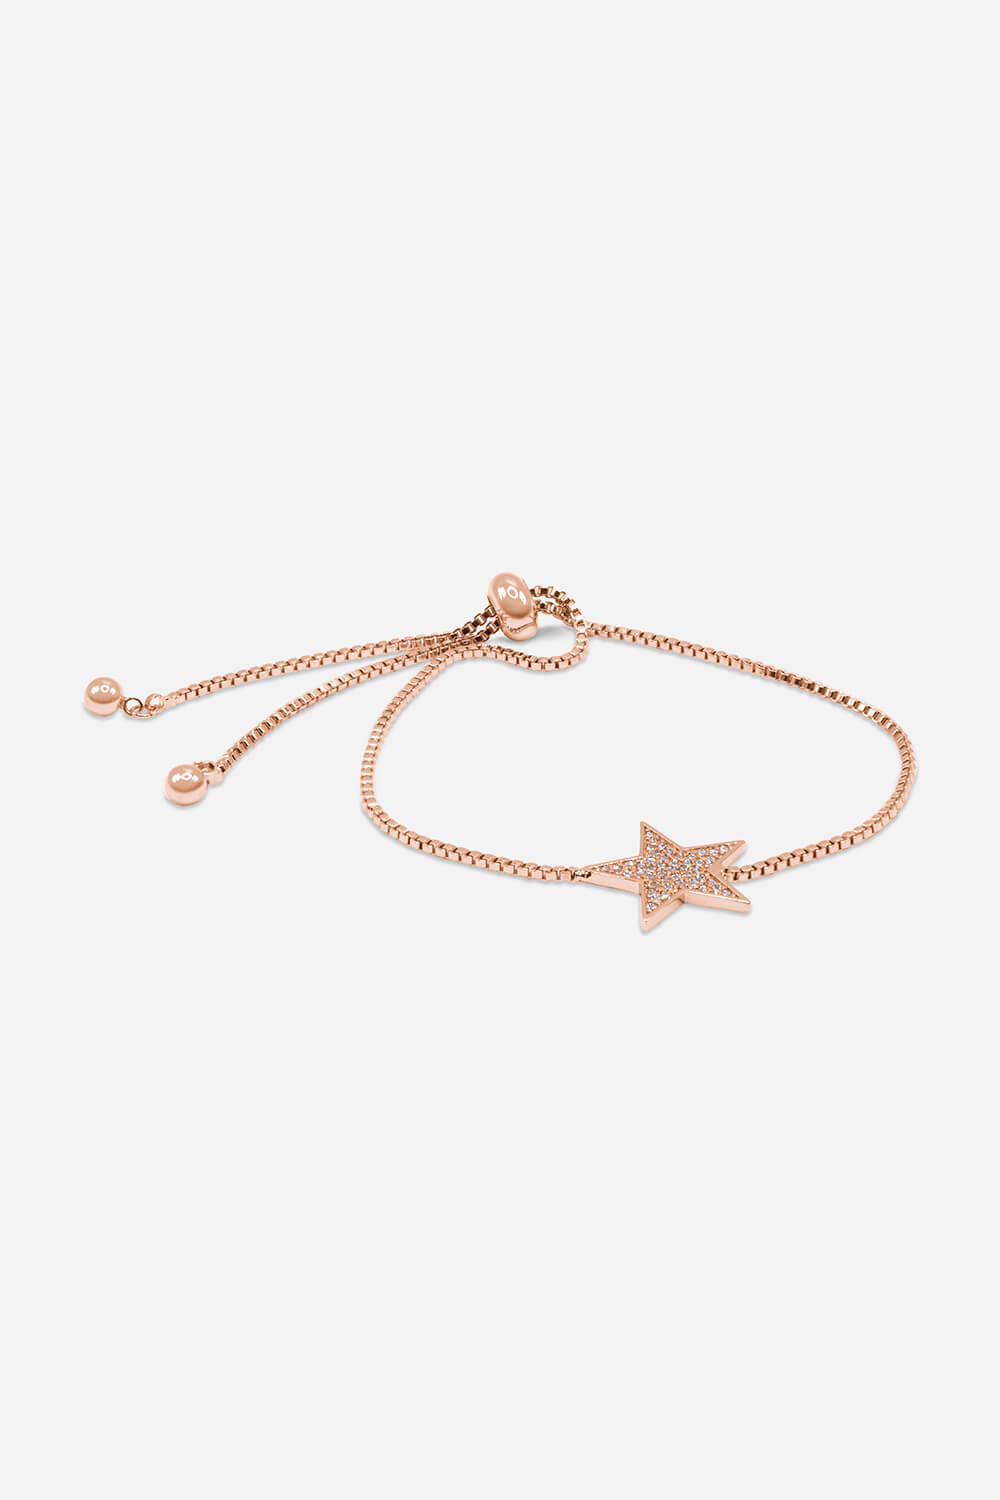 Rose Gold Adjustable Star Friendship Bracelet, Image 2 of 2